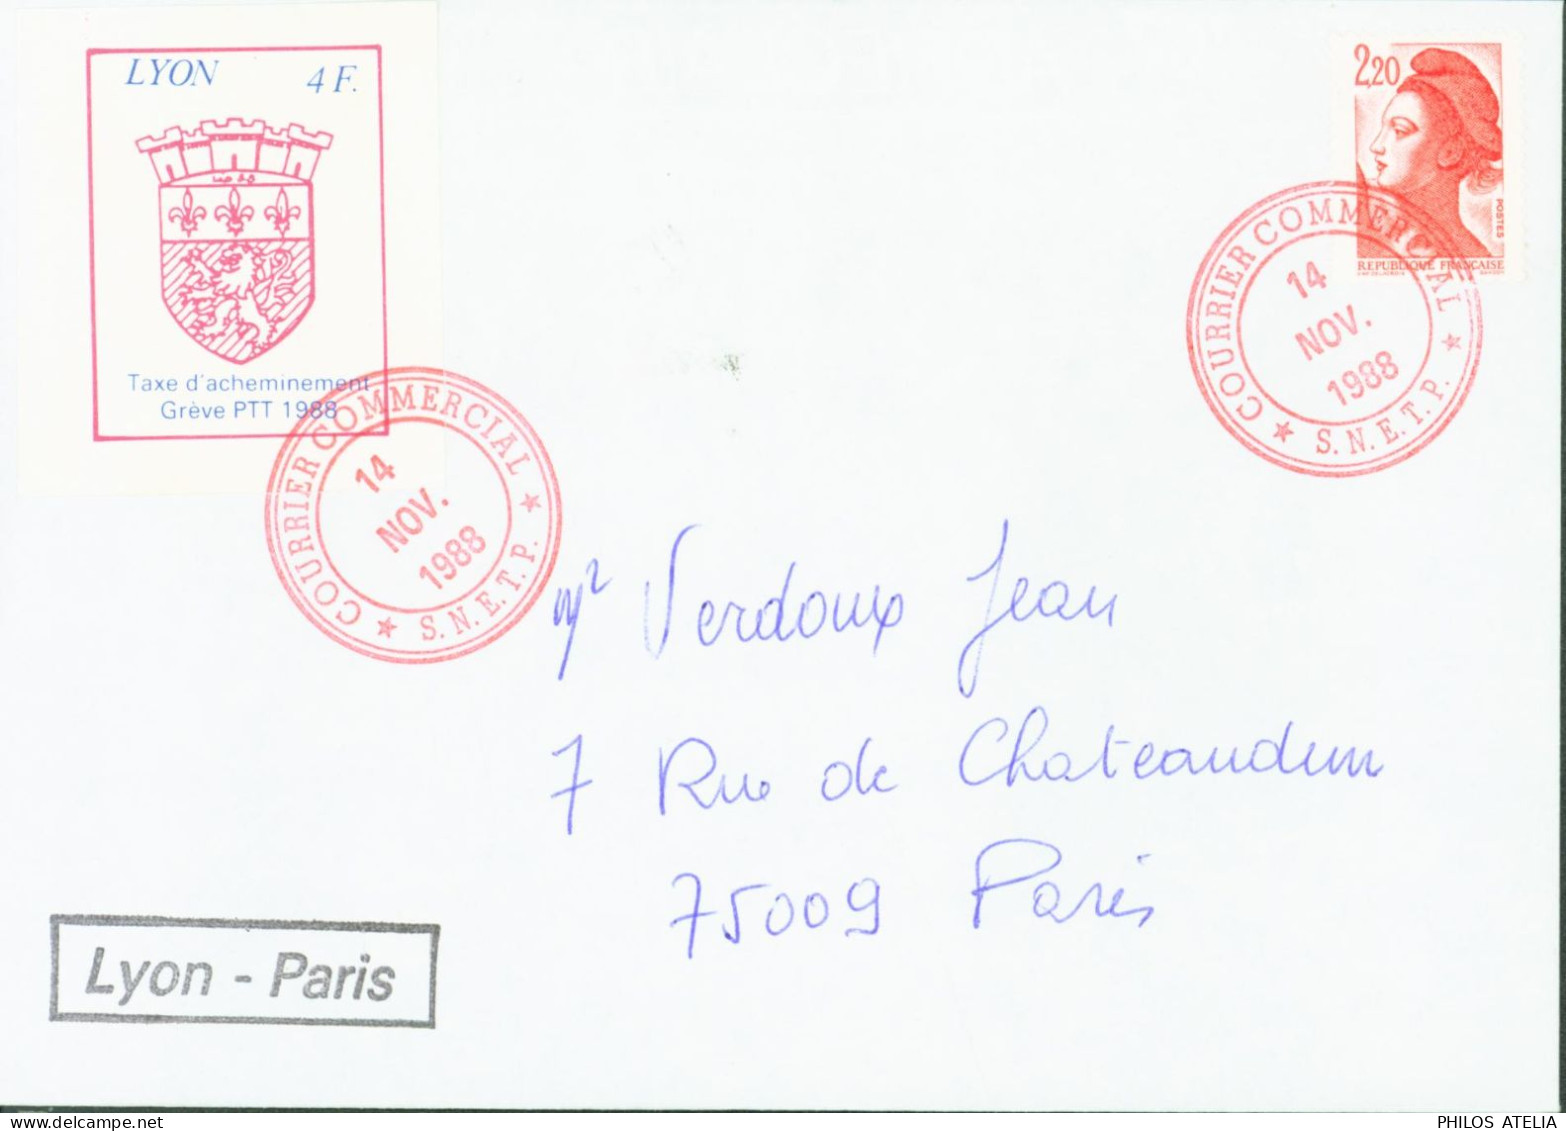 Timbre Lyon 4F Taxe D'acheminement Grève PTT 1988 Cachet Courrier Commercial 14 NO 1988 SNETP + YT N°2376 - Documentos